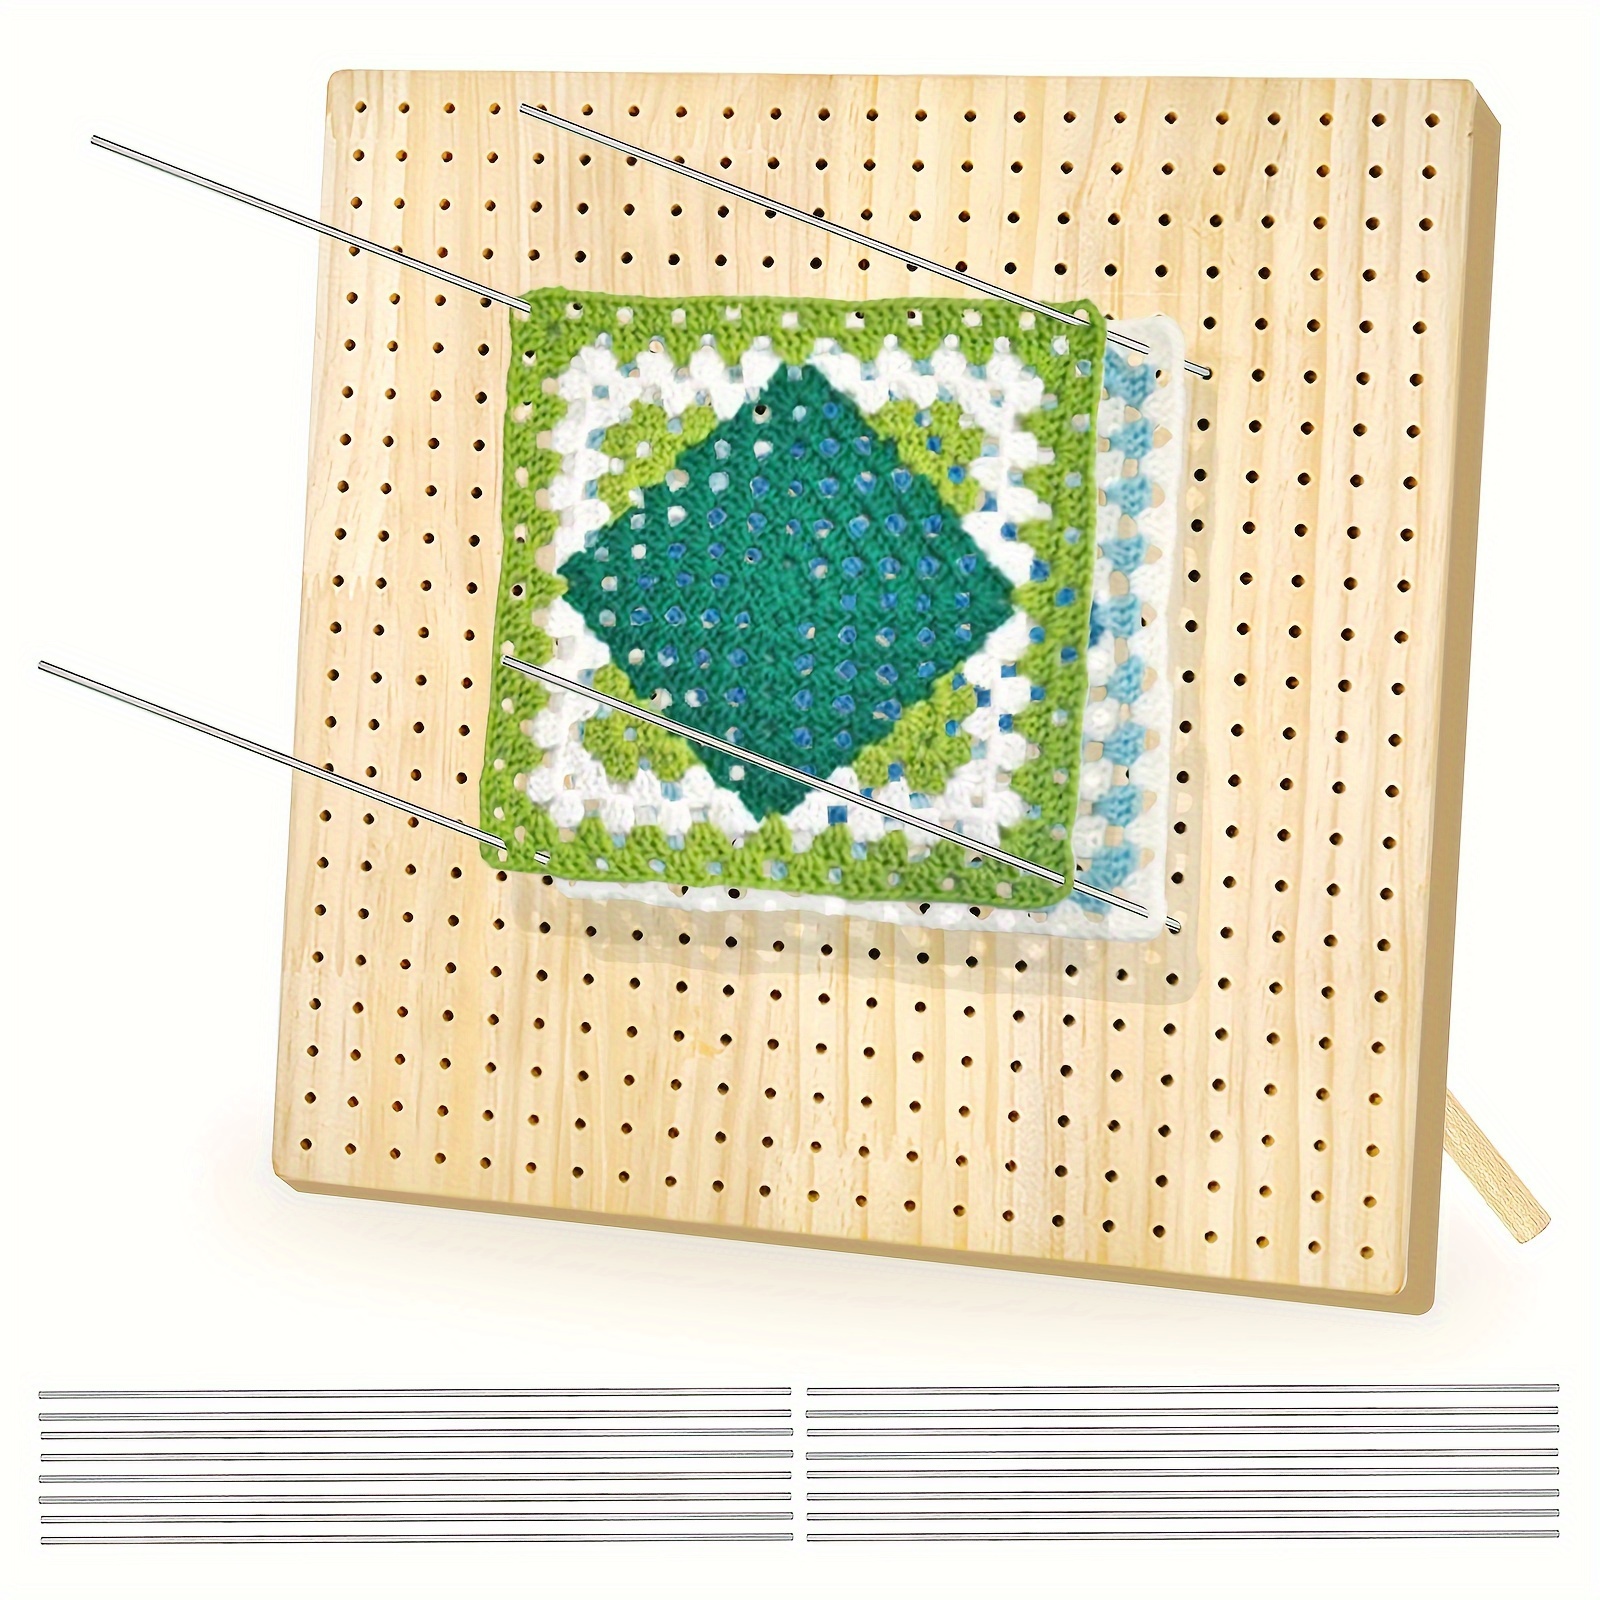 4Pcs/Set 12inch Foam Blocking Mats Foam Crochet Blocking Boards Grid  Blocking For Knitting Crochet Projects